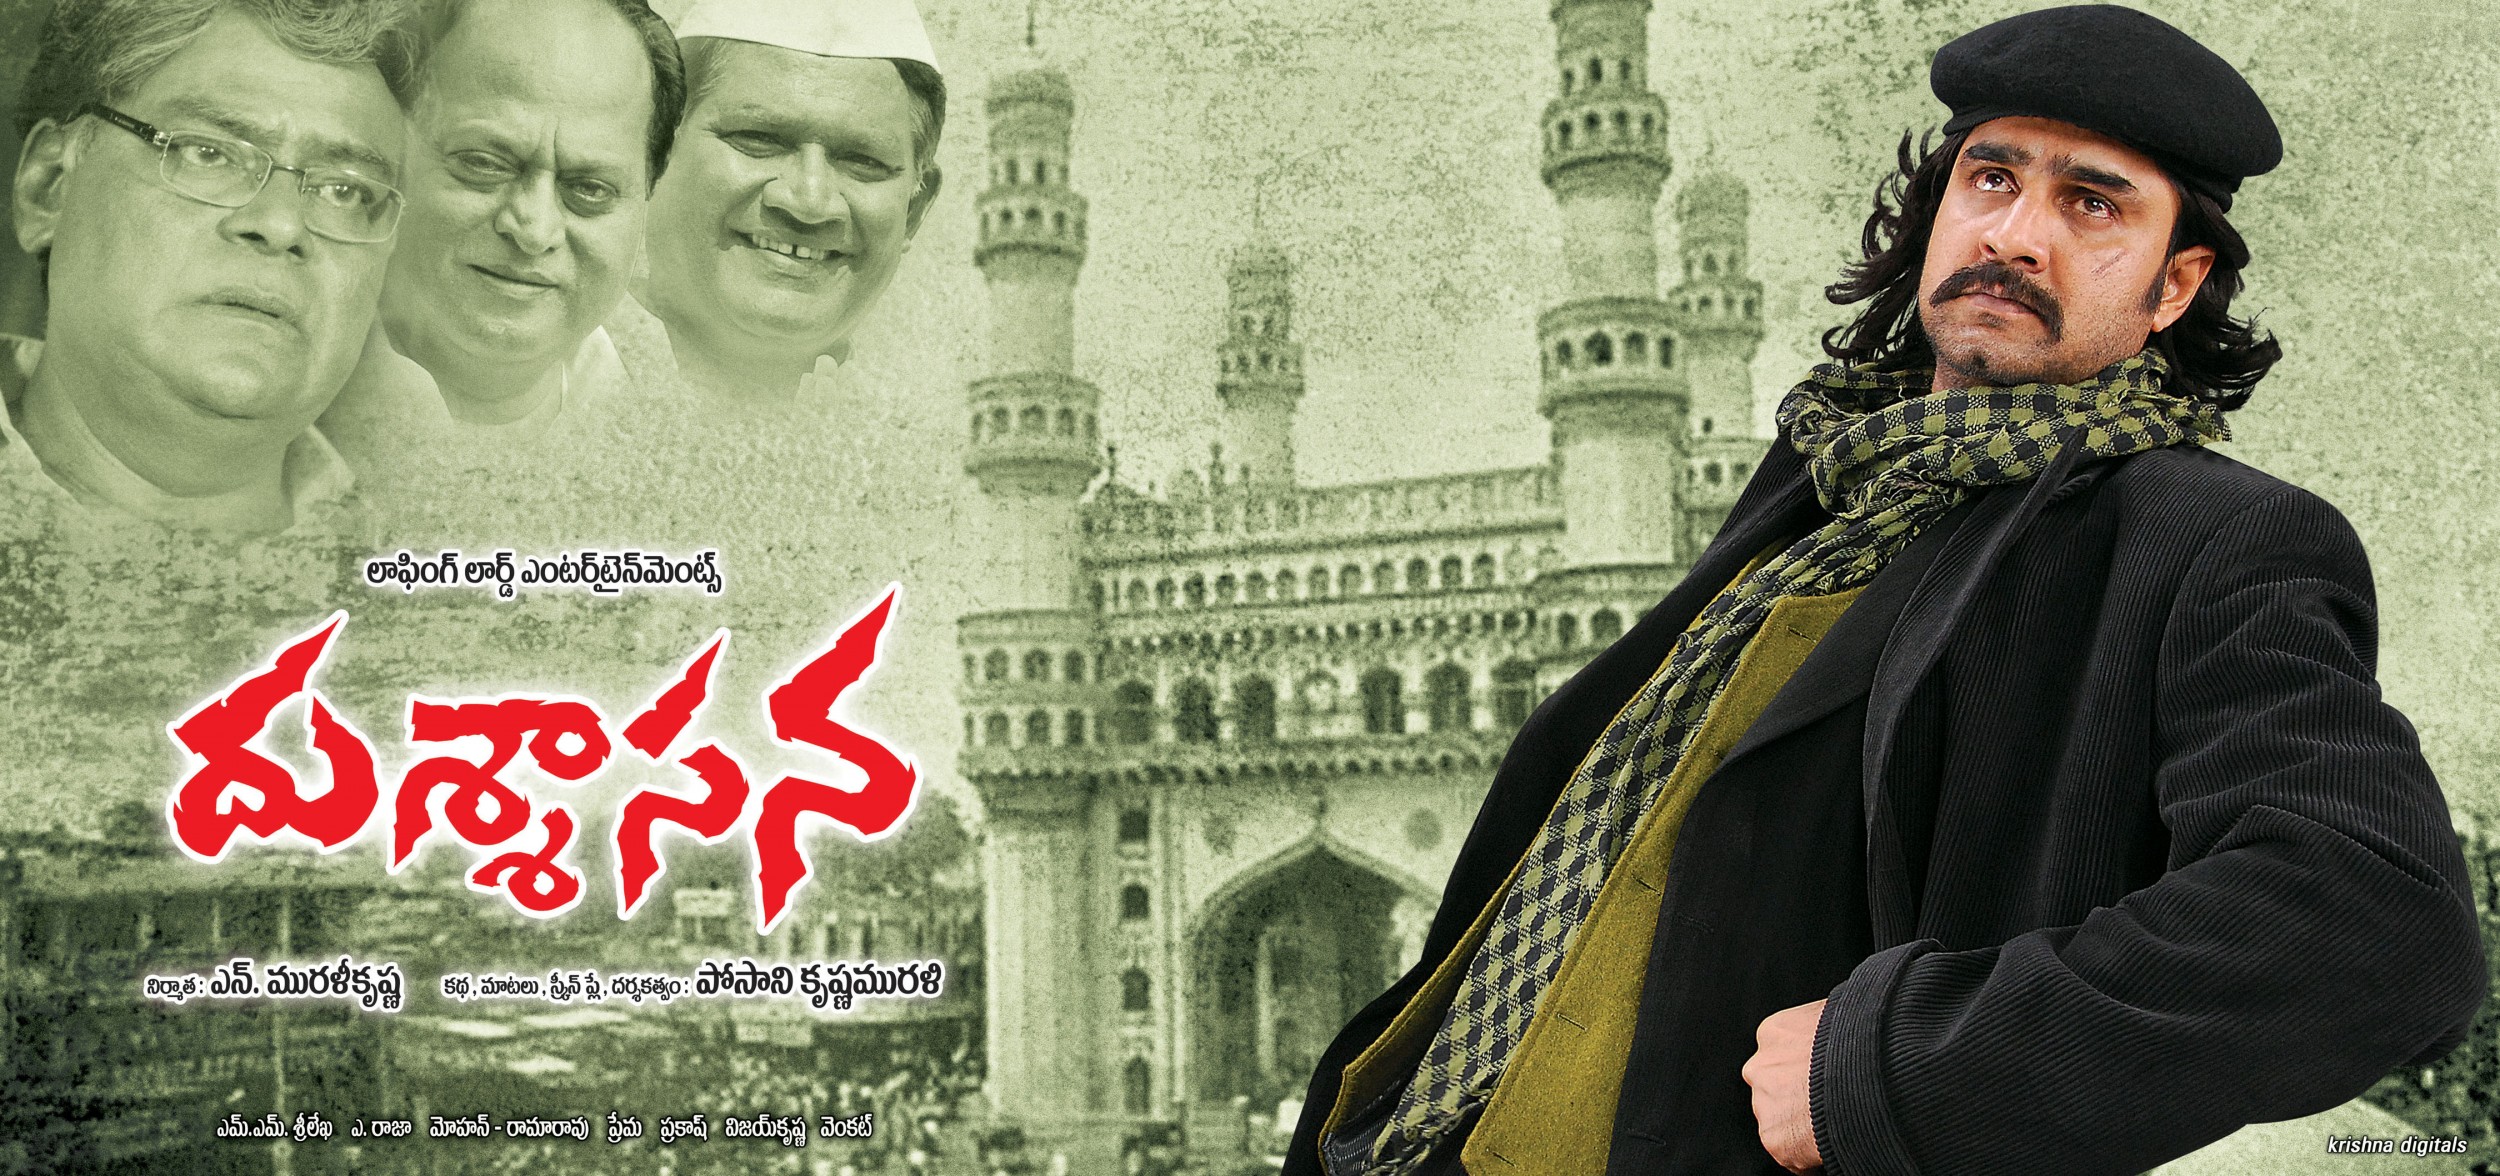 Mega Sized Movie Poster Image for Dushasana (#1 of 10)